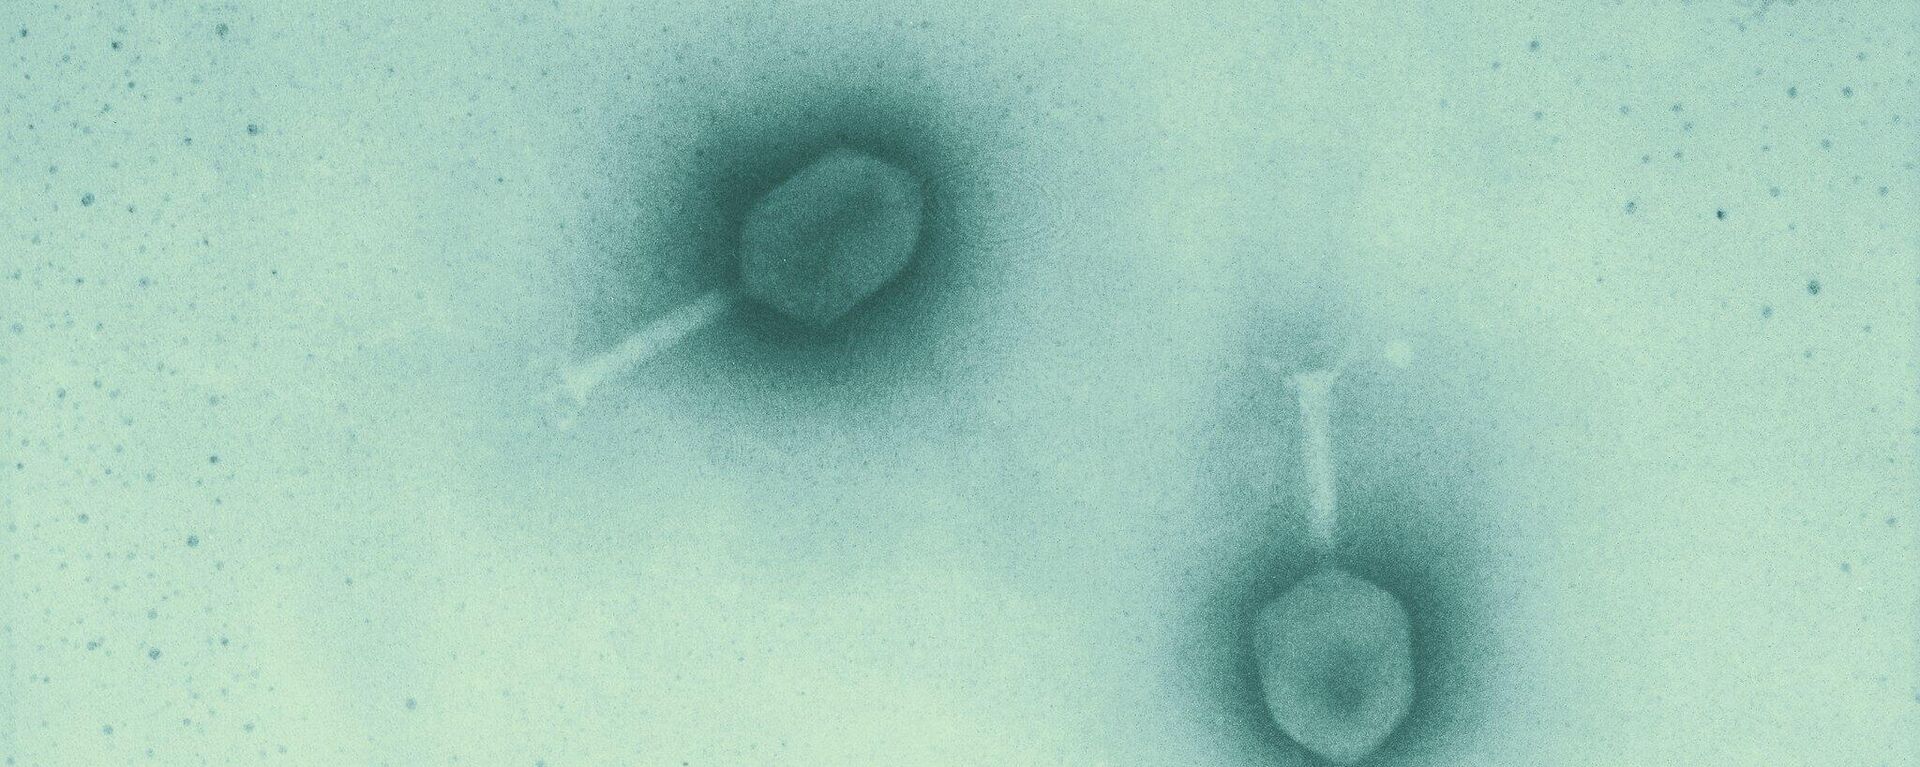 Bacteriófagos T4, uno de las más conocidos desde los años 50 - Sputnik Mundo, 1920, 03.12.2021